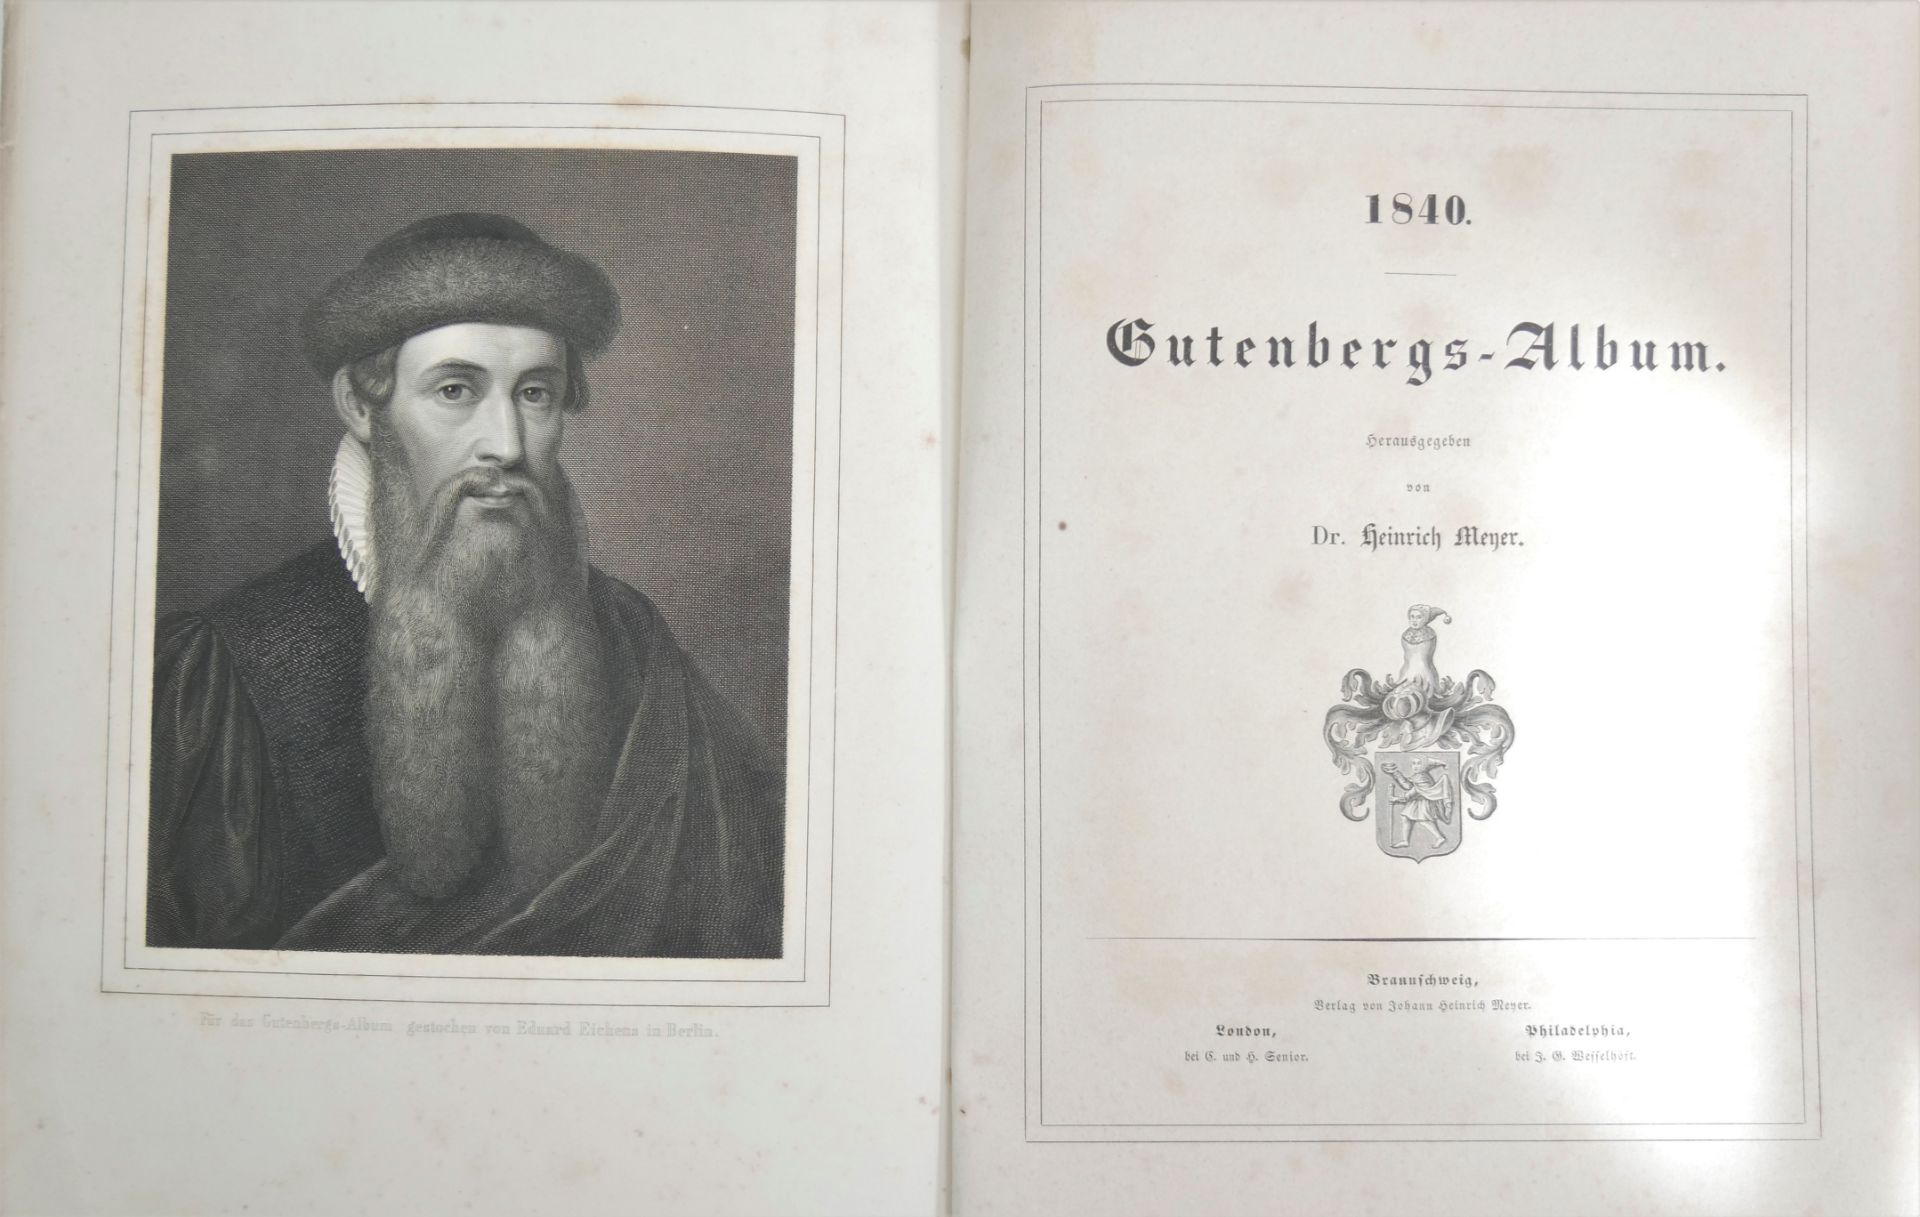 Gutenberg-Album, 1840. Verlag Johnann Heinrich Meyer, Braunschweig. - Image 2 of 3